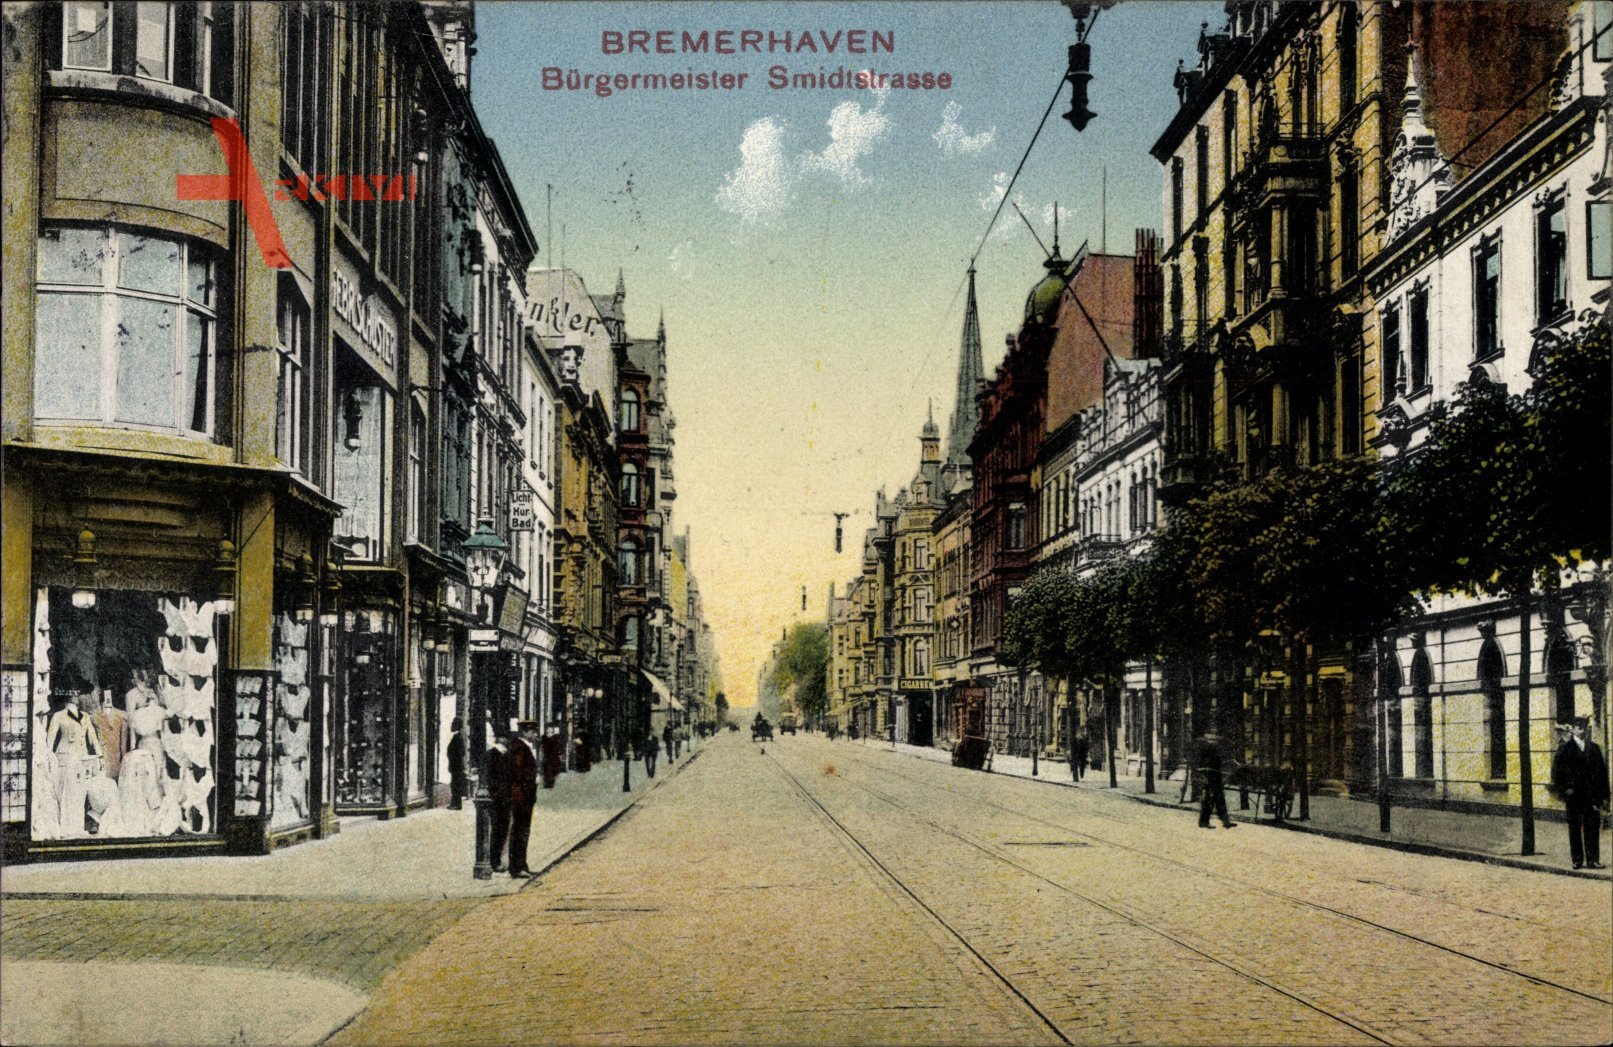 Bremerhaven, Bürgermeister Smidtstraße, Geschäfte